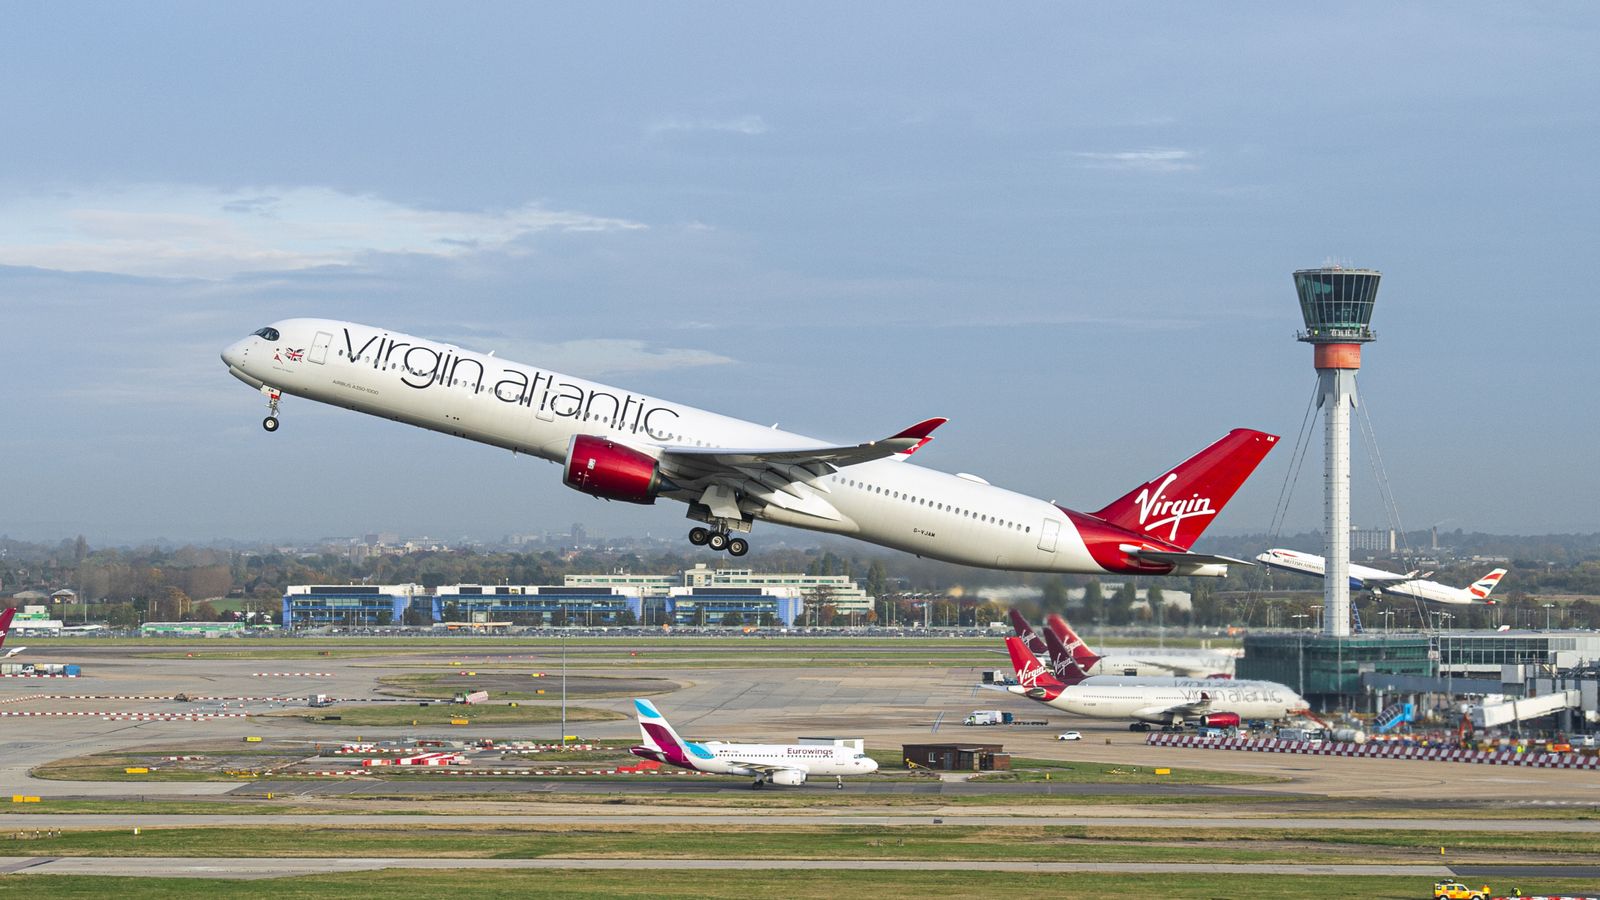 Un vol Virgin Atlantic contraint de devenir pilote « instructeur non affecté » |  Nouvelles du Royaume-Uni